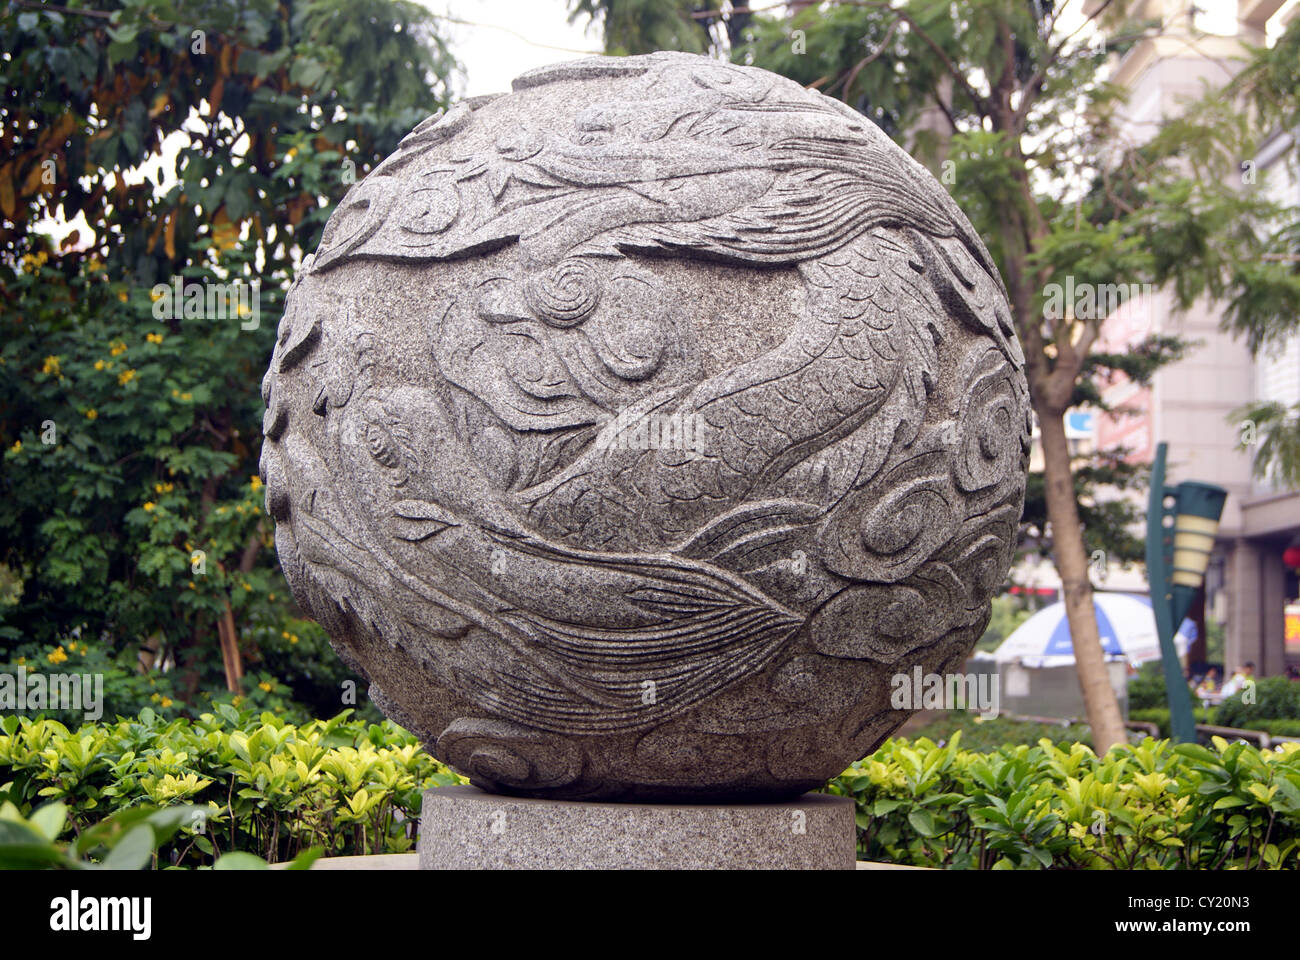 Ball of sculpture, urban landscape sculpture Stock Photo